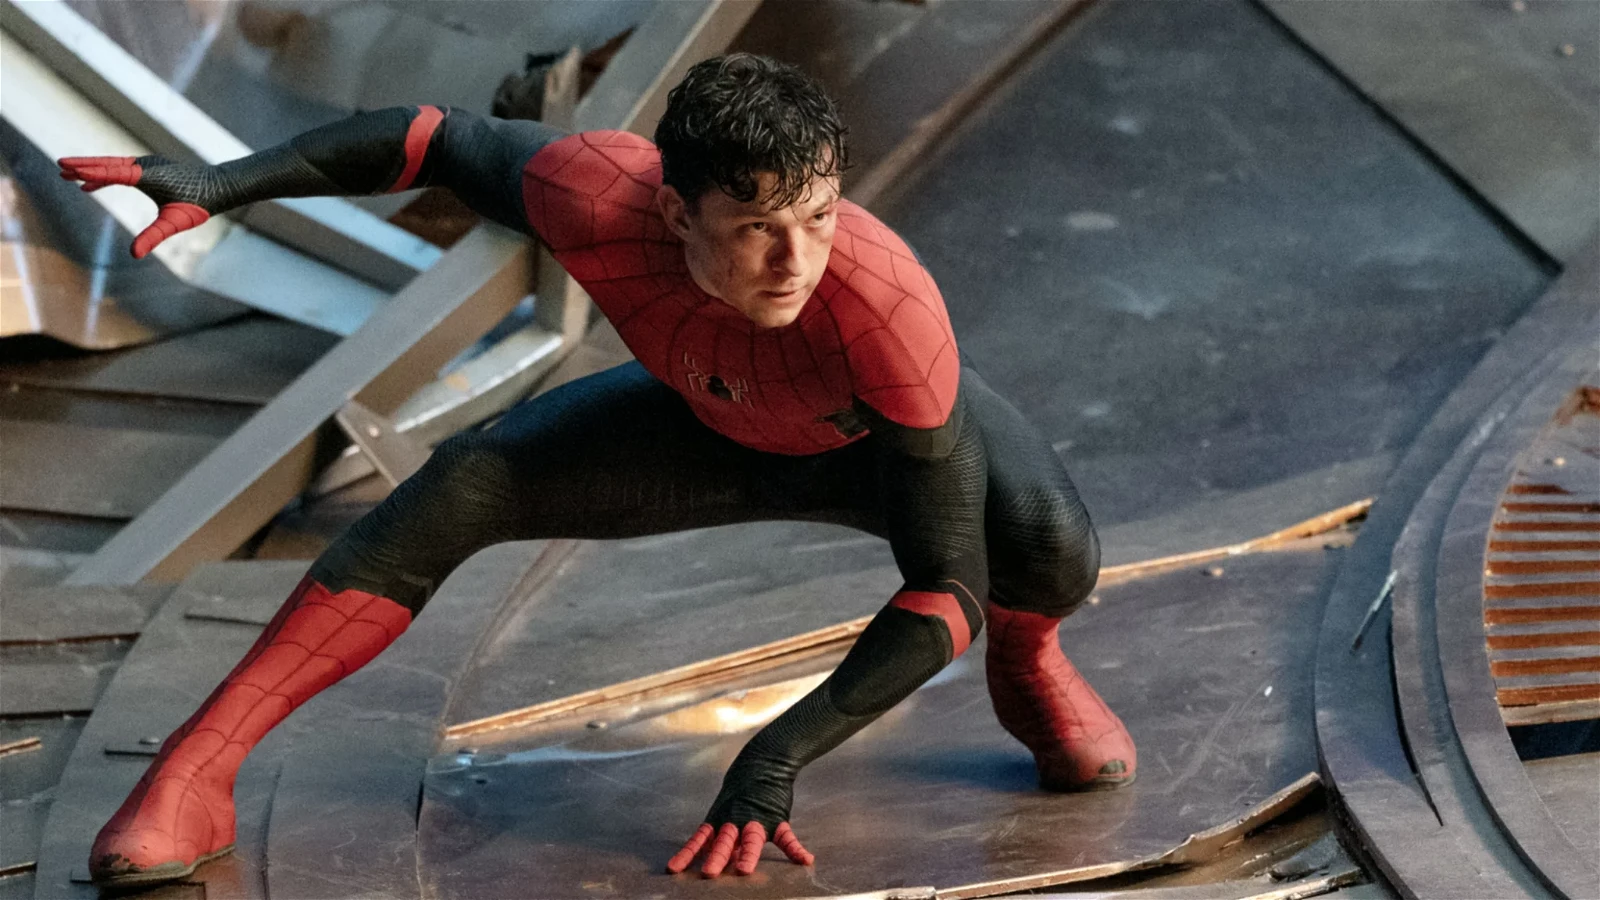 Kevin Feige confirmed Spider-Man 4